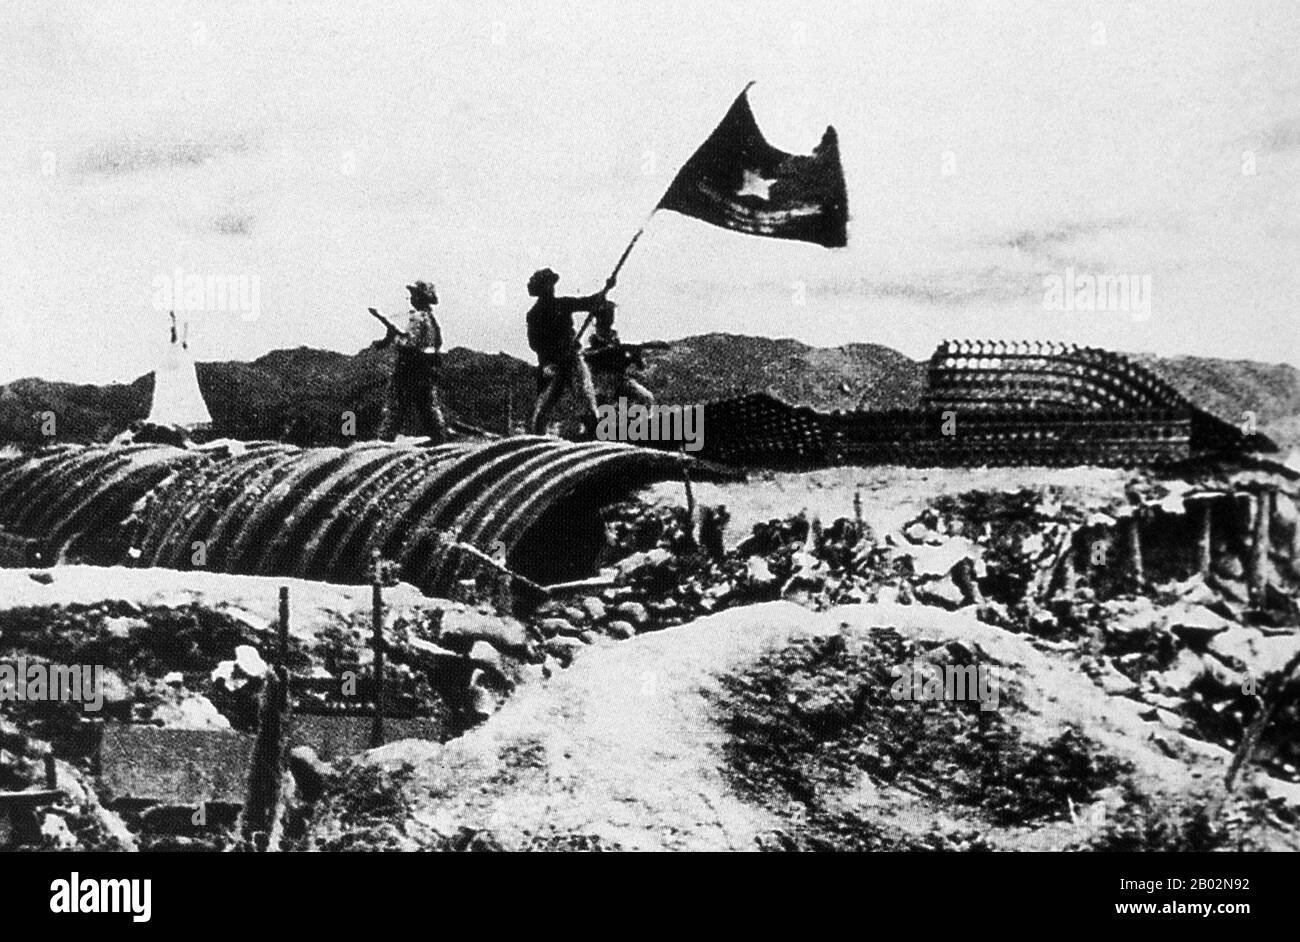 L'importante battaglia di Dien Bien Phu fu combattuta tra il Việt Minh (guidato dal generale Vo Nguyen Giap) e l'Unione francese (guidata dal generale Henri Navarre, successore del generale Raoul Salan). L'assedio della guarnigione francese durò cinquantasette giorni, dalle 5:30PM del 13 marzo alle 5:30PM del 7 maggio 1954. L'avamposto meridionale o la base del fuoco del campo, Isabelle, non seguiva l'ordine del cessate il fuoco e combatté fino al giorno successivo alle 01:00AM; poche ore prima della lunga conferenza indochina dell'incontro di Ginevra che coinvolse gli Stati Uniti, il Regno Unito, l'Unione francese e l'Unione Sovietica. Foto Stock